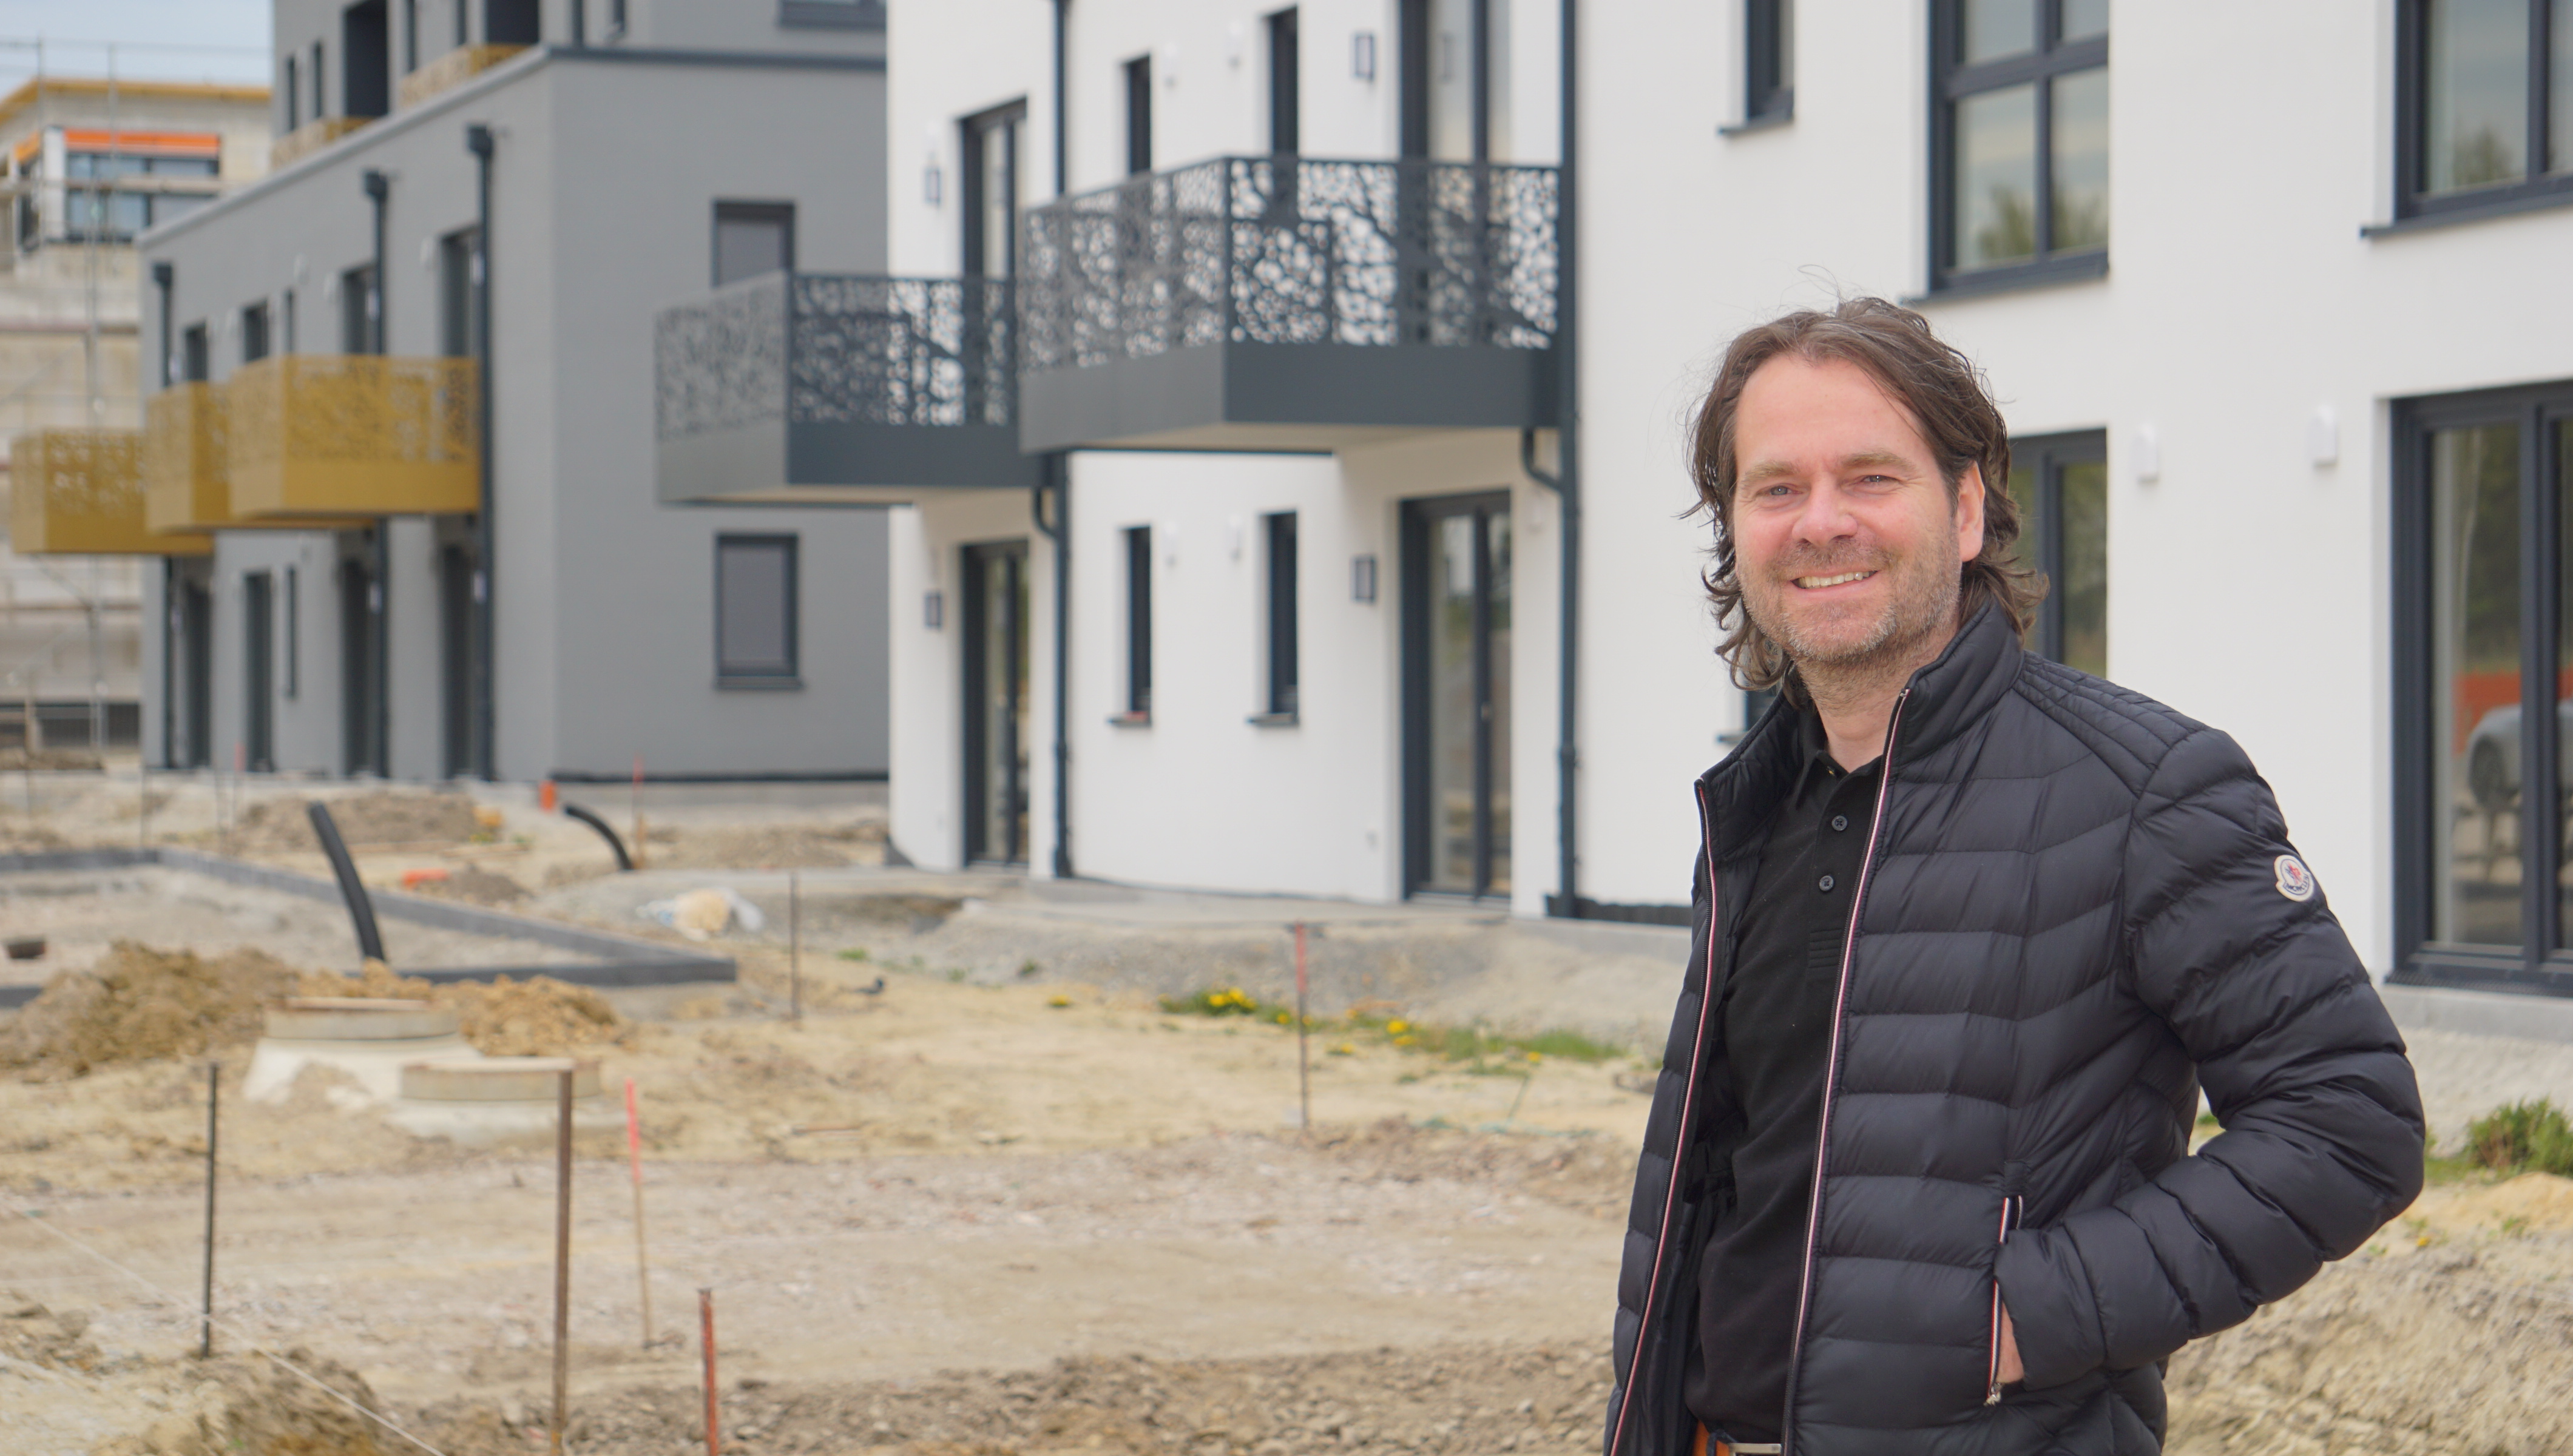 Phillip Fleper (43) ist der Architekt des neuen Bielefelder Stadtquartiers Grünheide. Er geht davon aus, dass viele andere Kommunen in der Region erkennen, wie viele nachhaltige Ideen in dem Konzept stecken.